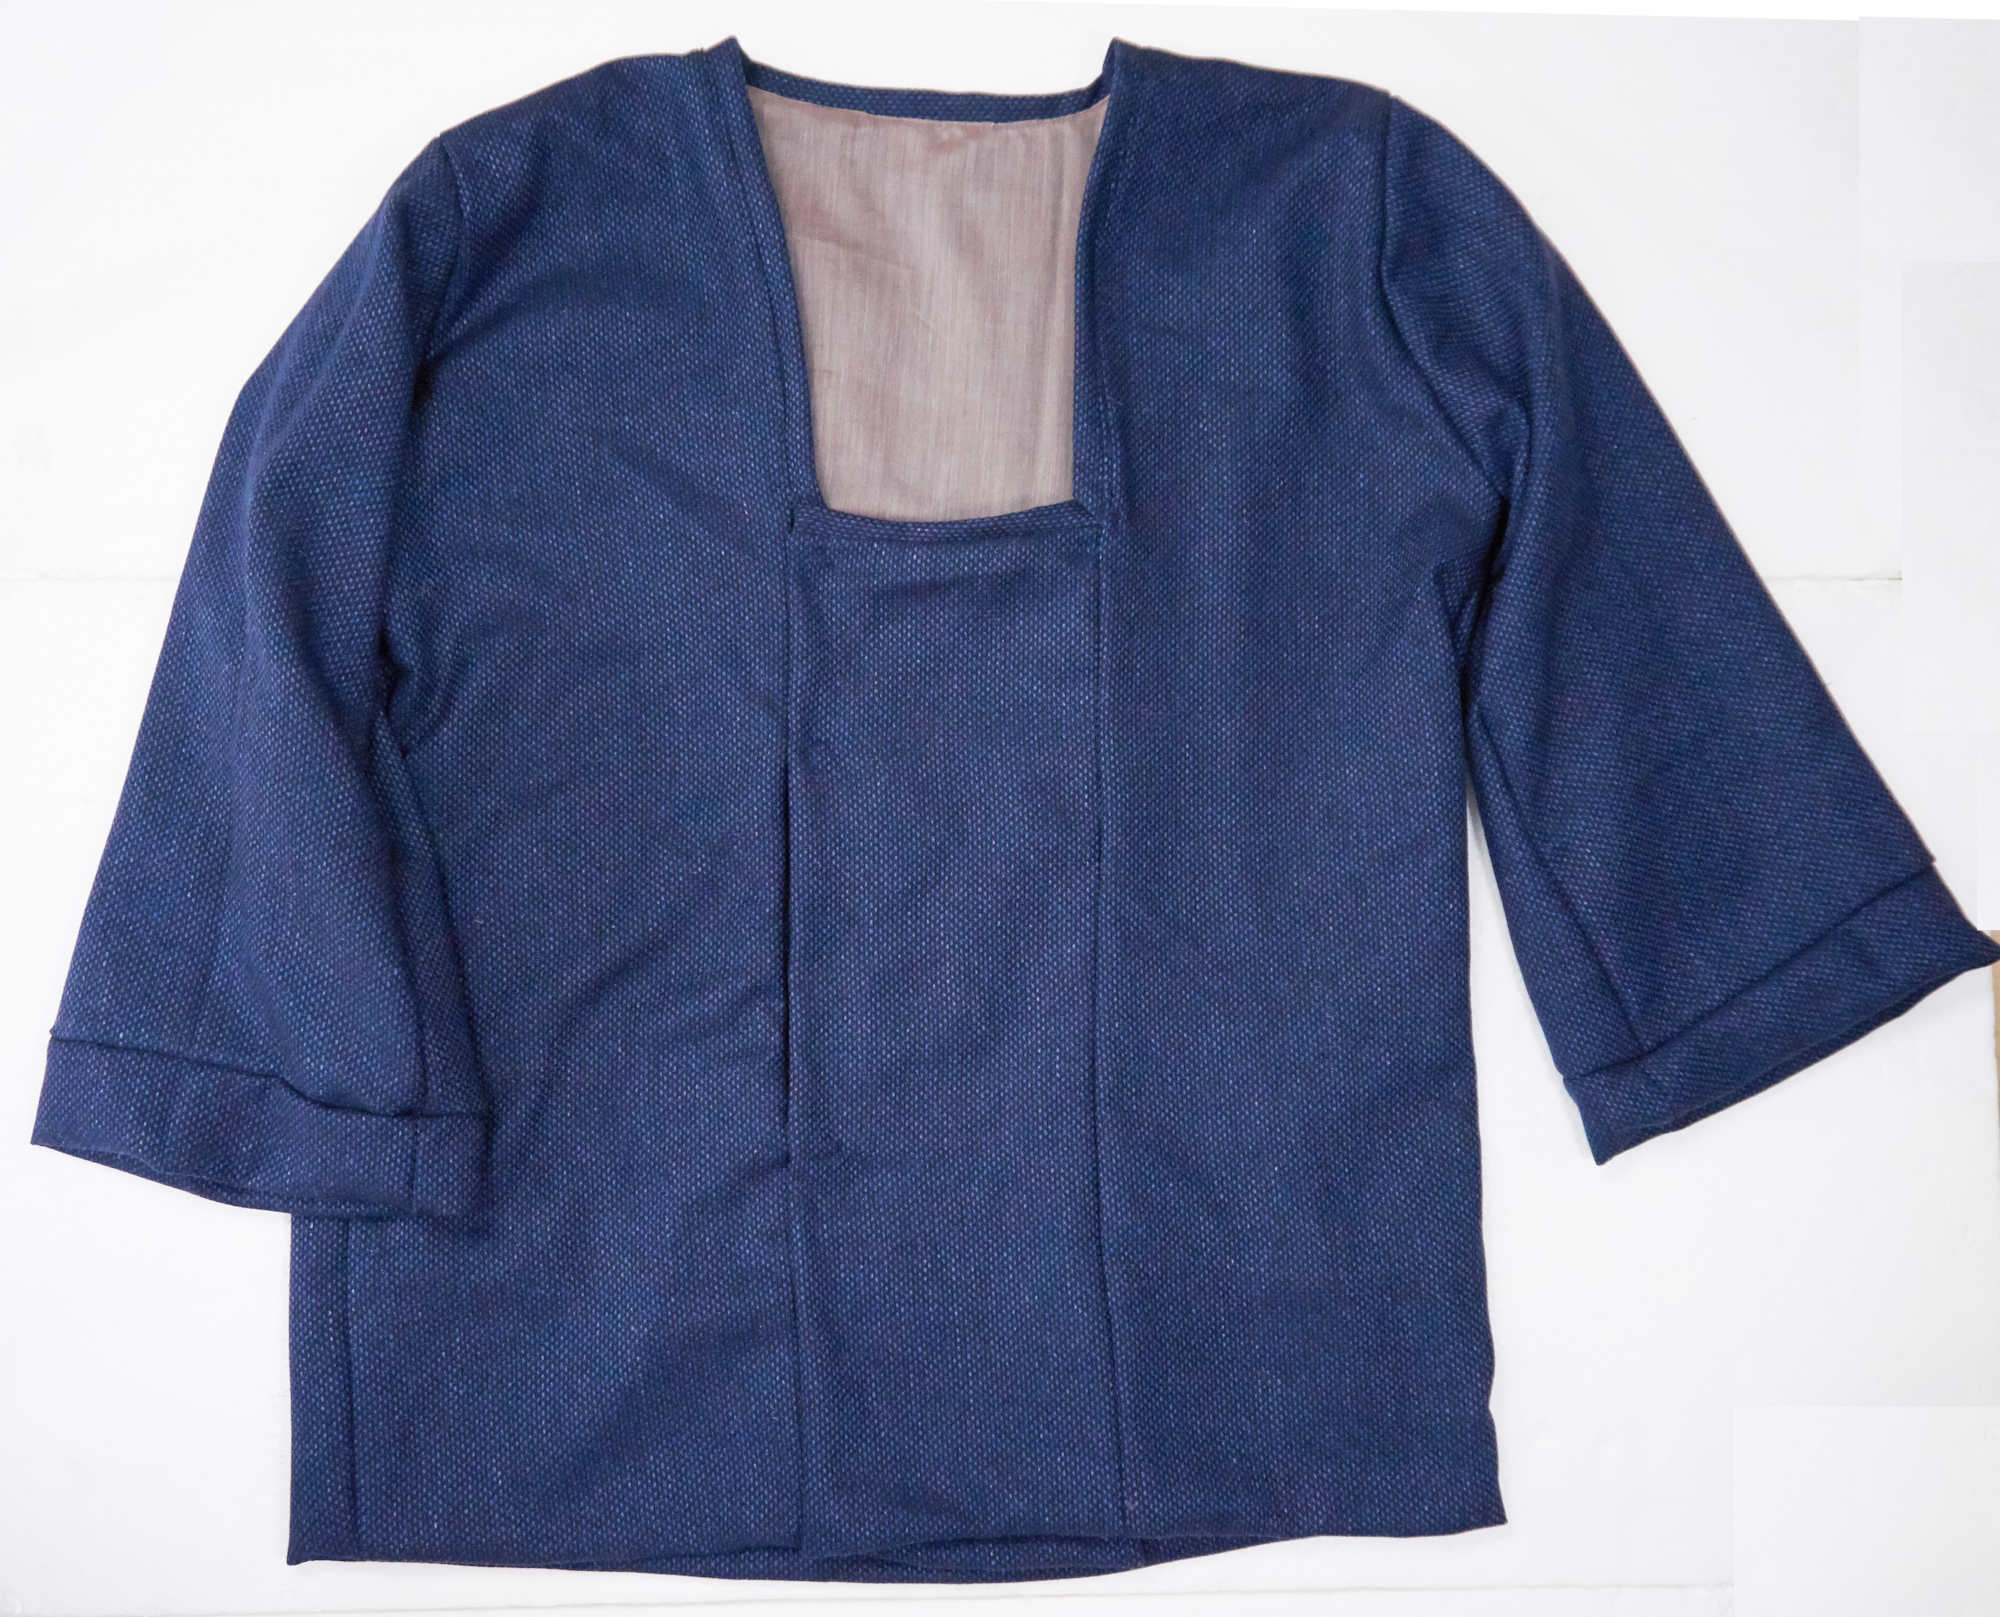 giacca in lana foderata con maniche ampie e tasca frontale